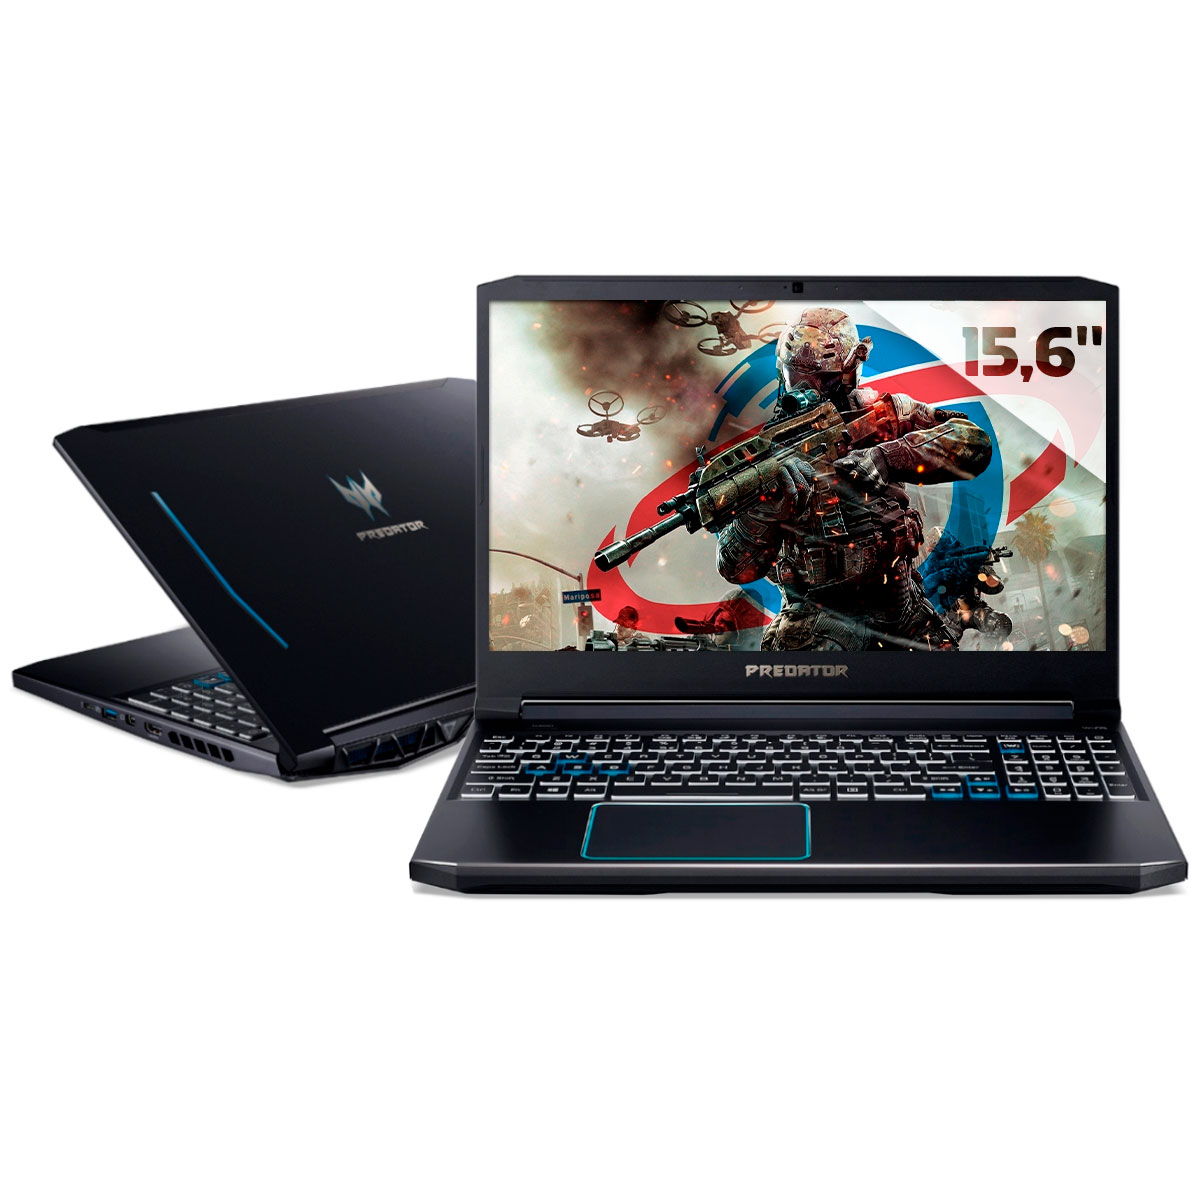 Notebook Acer Gaming Predator Helios 300 - Intel i7 10750H, 32GB, HD 1TB + SSD 256GB, GeForce RTX 2060 6GB, Tela 15.6